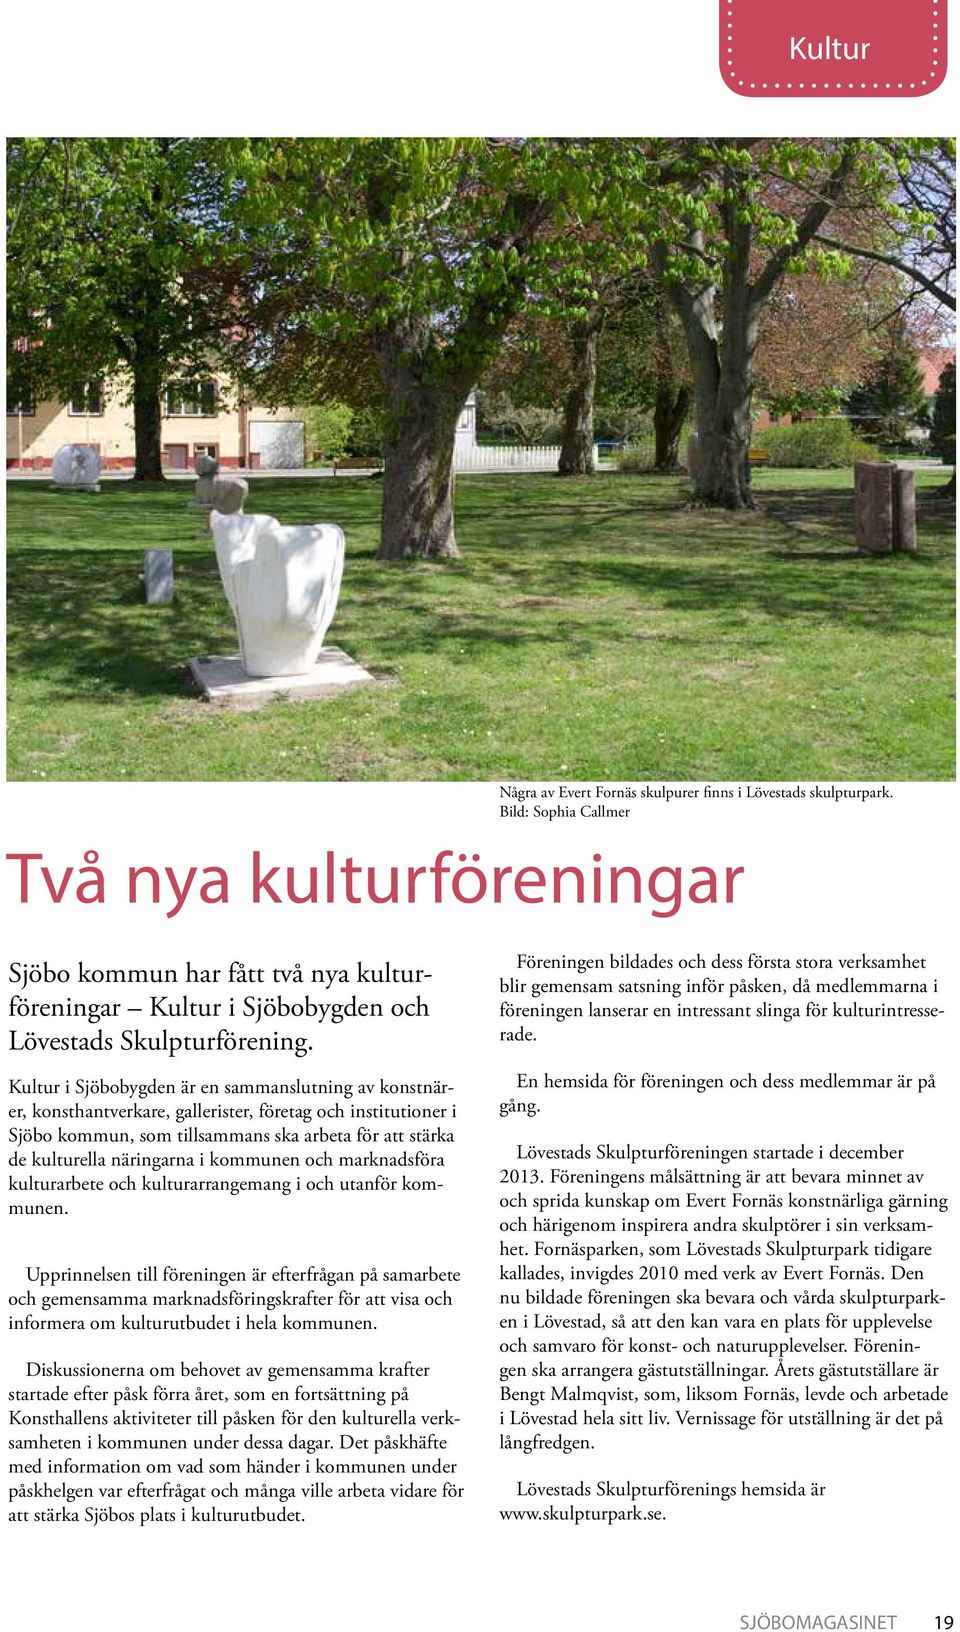 Kultur i Sjöbobygden är en sammanslutning av konstnärer, konsthantverkare, gallerister, företag och institutioner i Sjöbo kommun, som tillsammans ska arbeta för att stärka de kulturella näringarna i